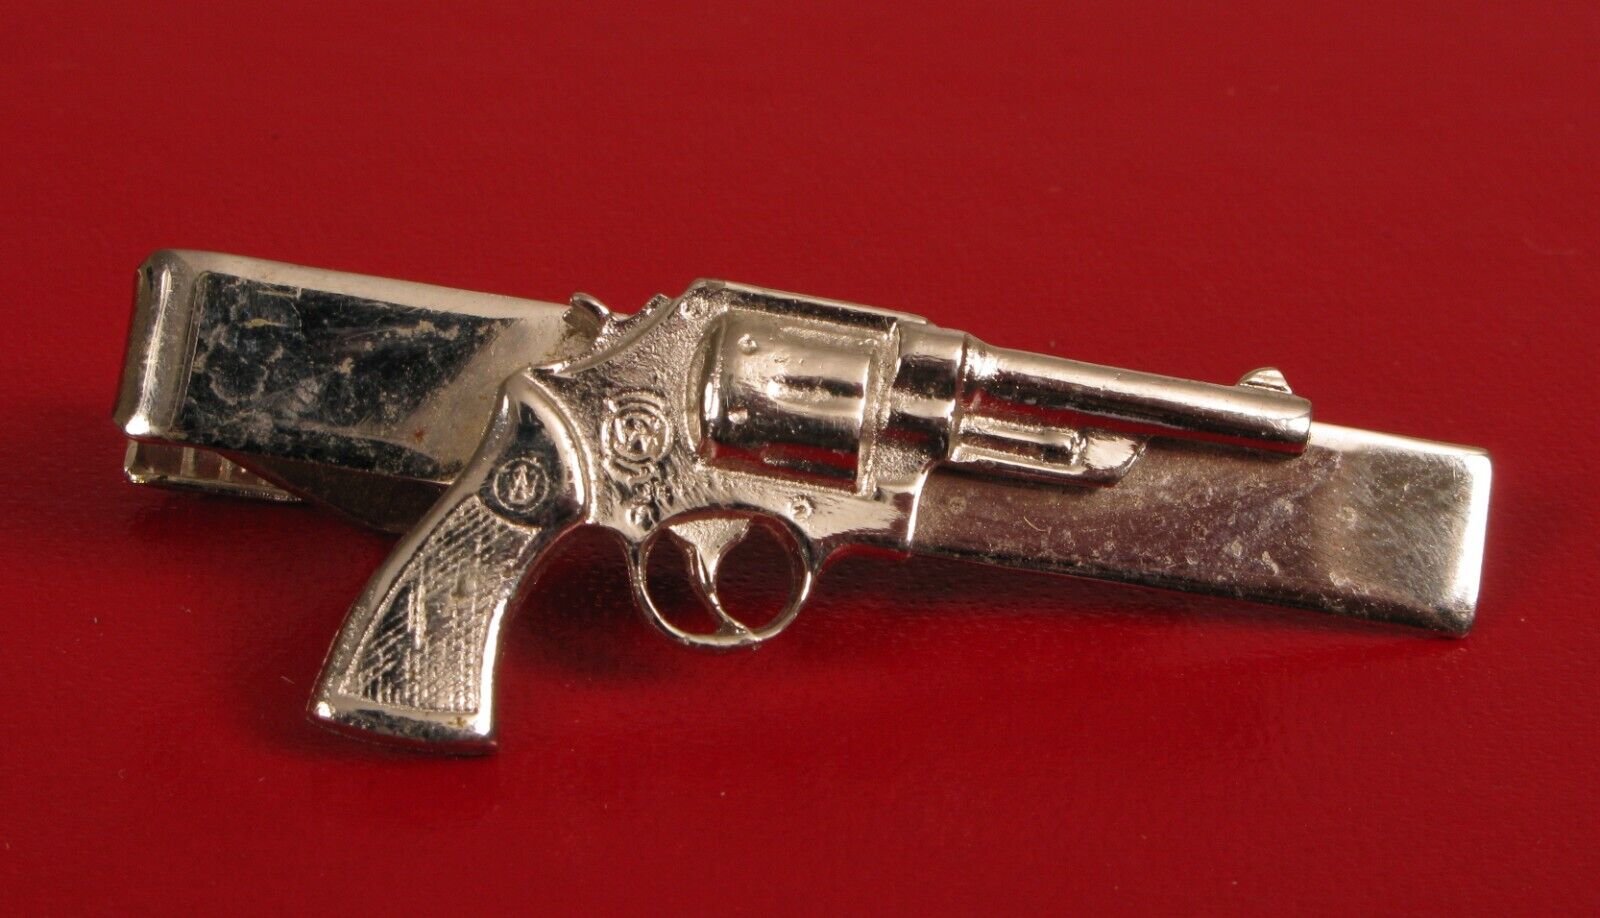 VINTAGE POLICE SMITH & WESSON REVOLVER PISTOL GUN BADGE TIE BAR CLIP 